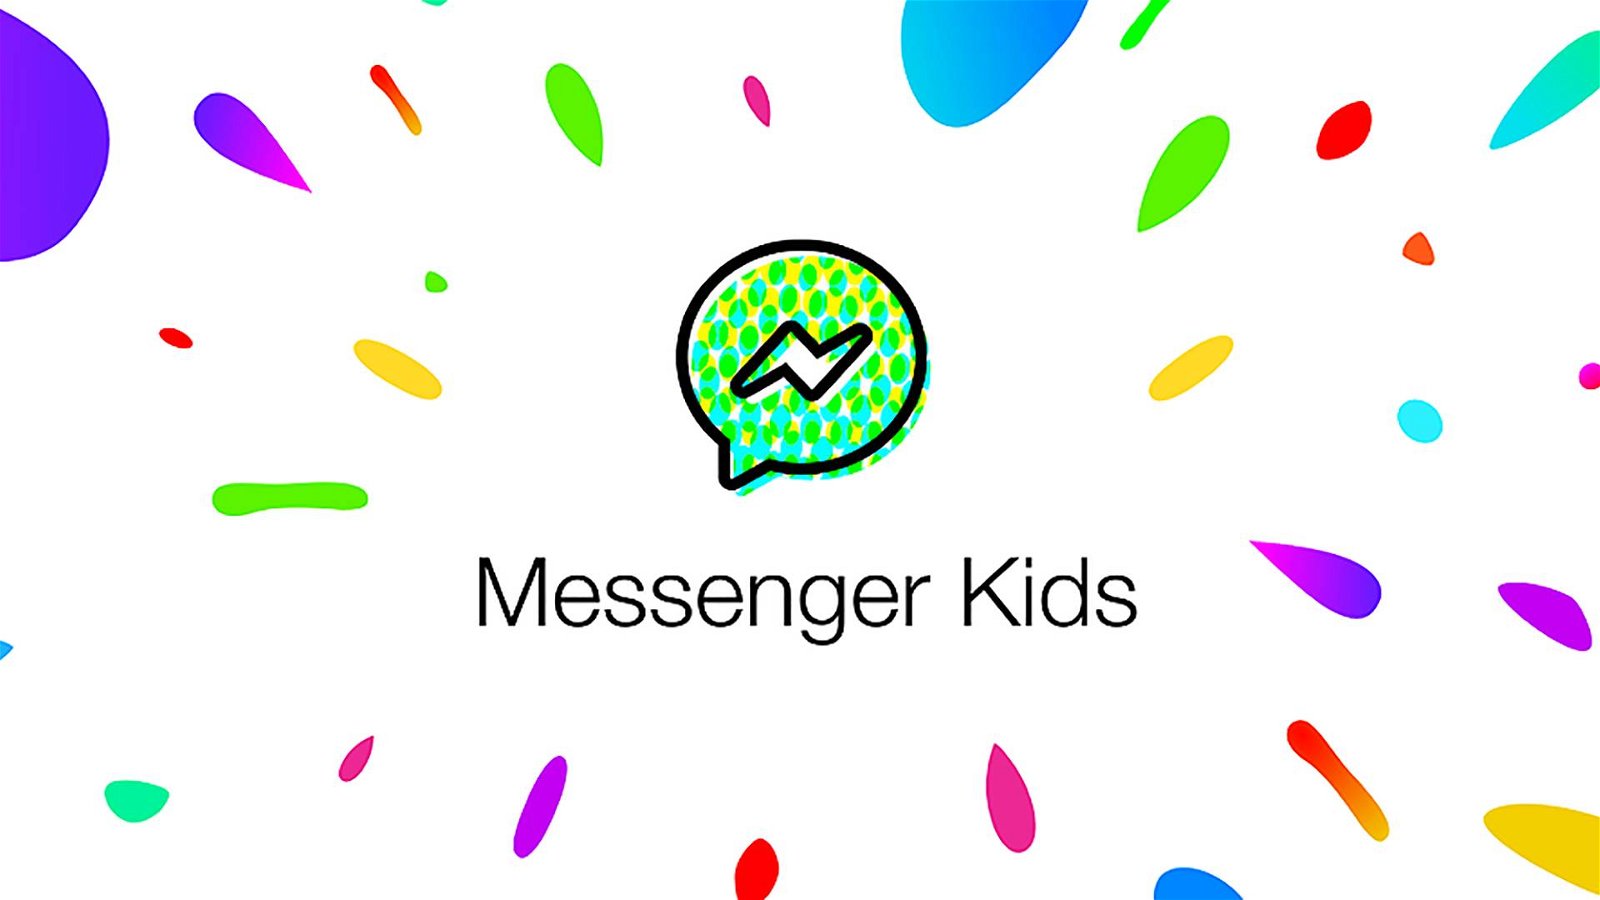 Immagine di Facebook Messenger Kids, un bug consentiva di chattare anche con adulti non autorizzati